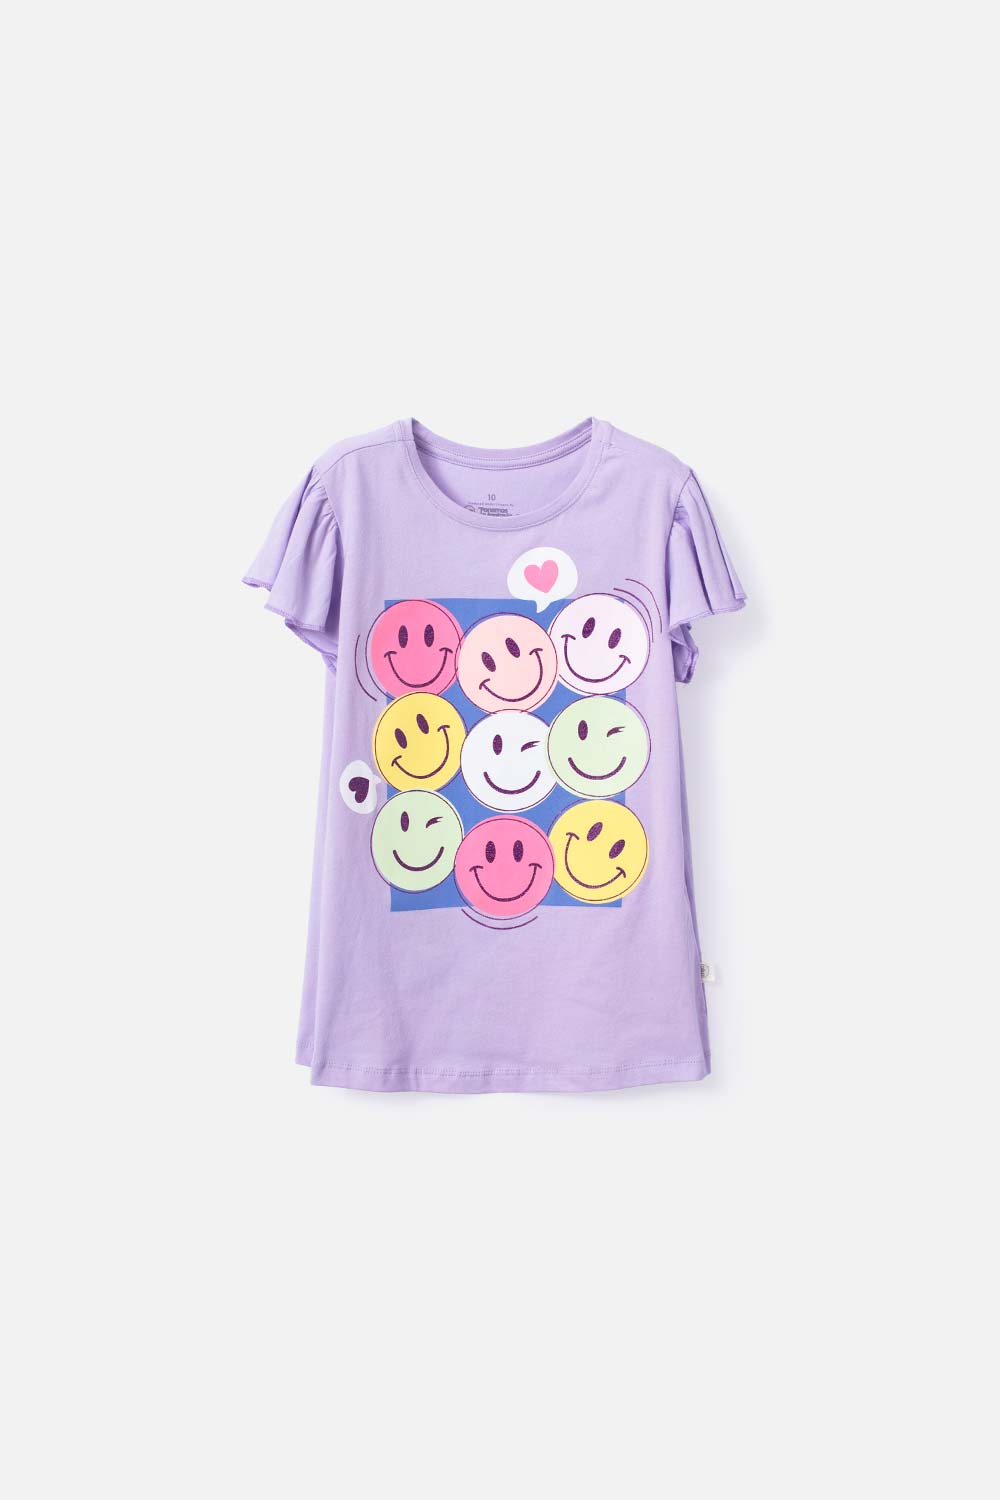 Camiseta de niña, manga corta lila de Mic - Tienda Online MIC